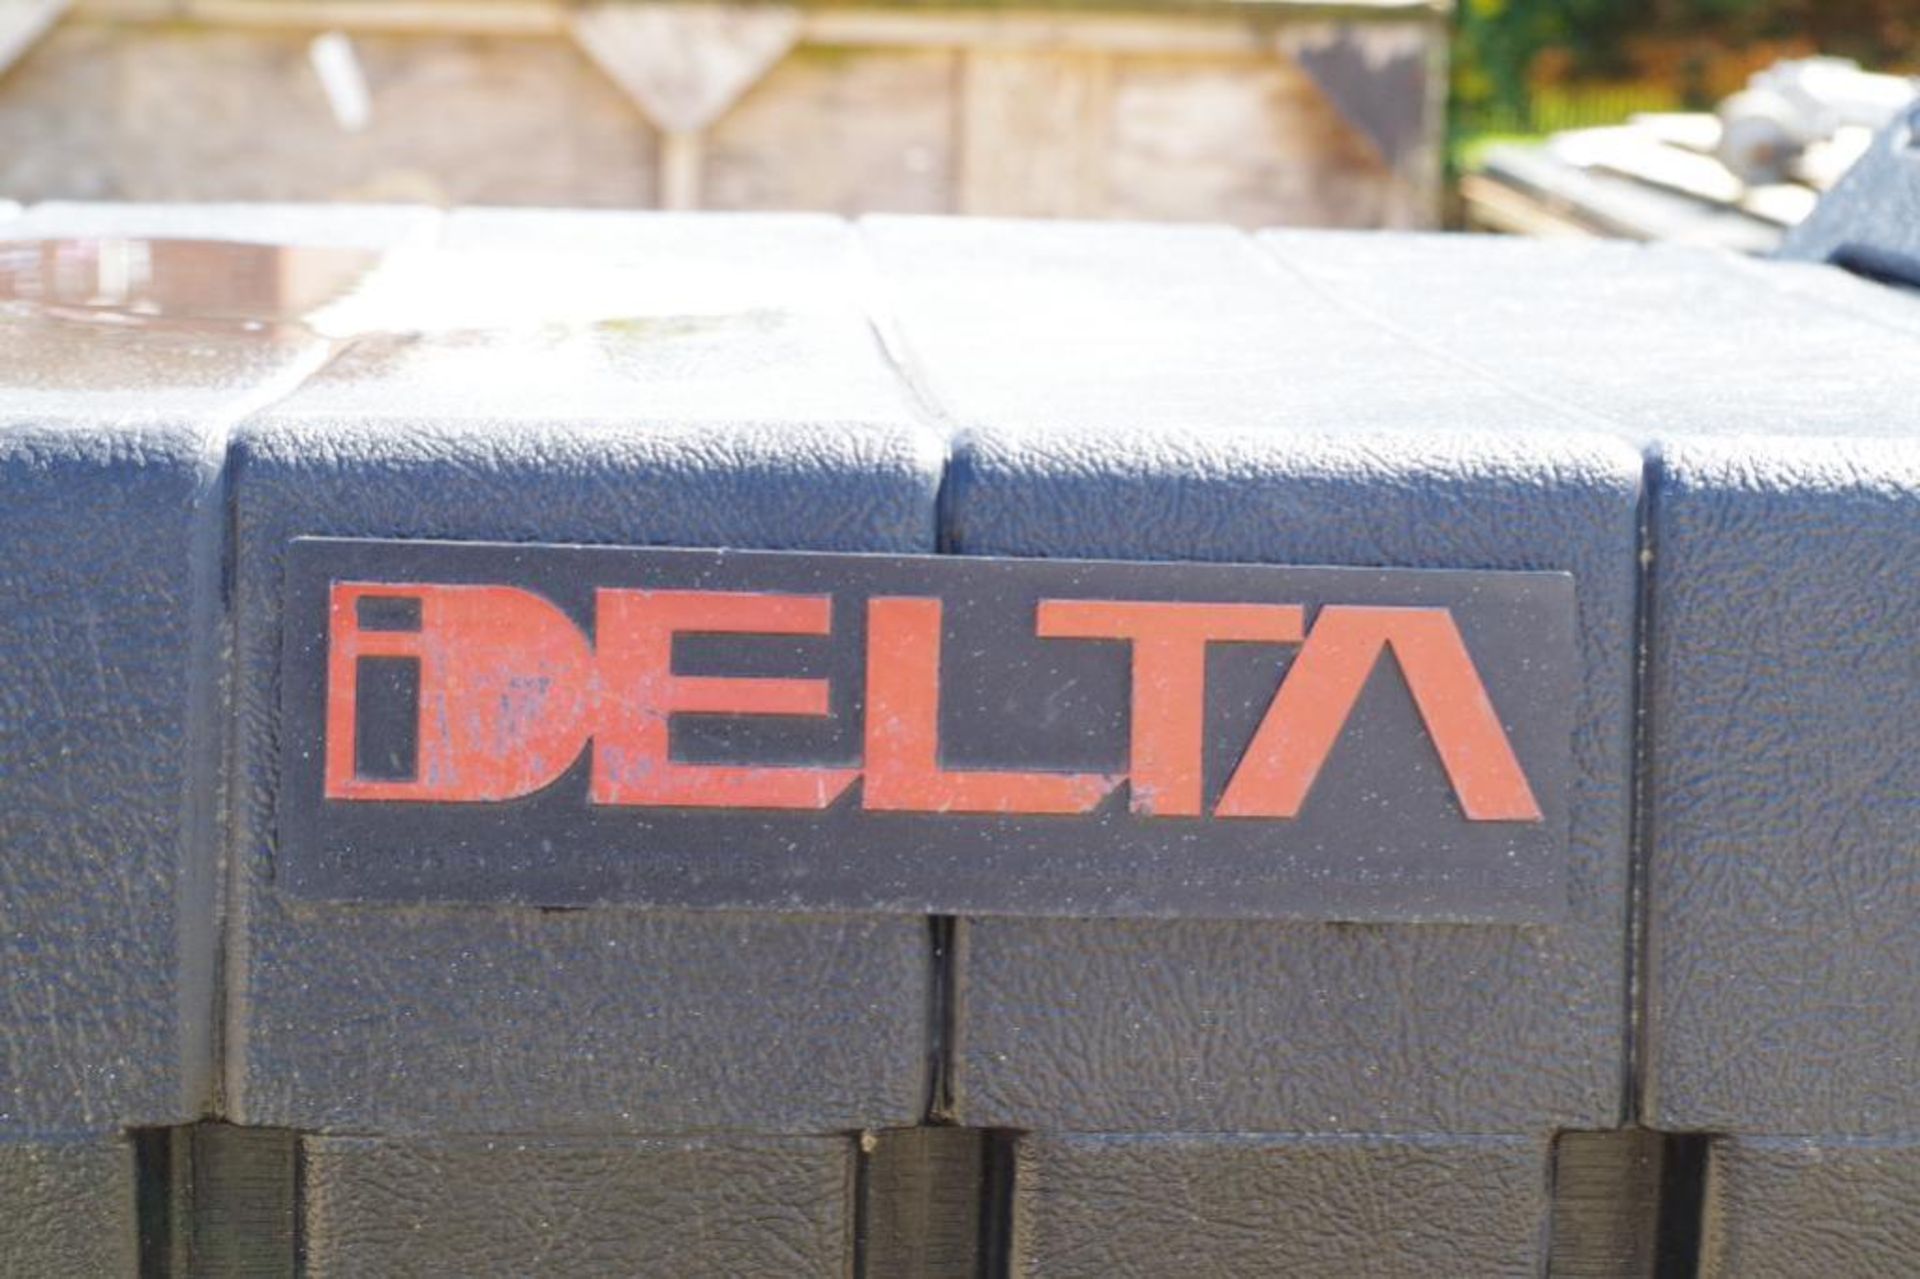 DELTA Lockable Plastic Truck Box, Approx. 70"L x 20"W x 15"H - Image 2 of 3